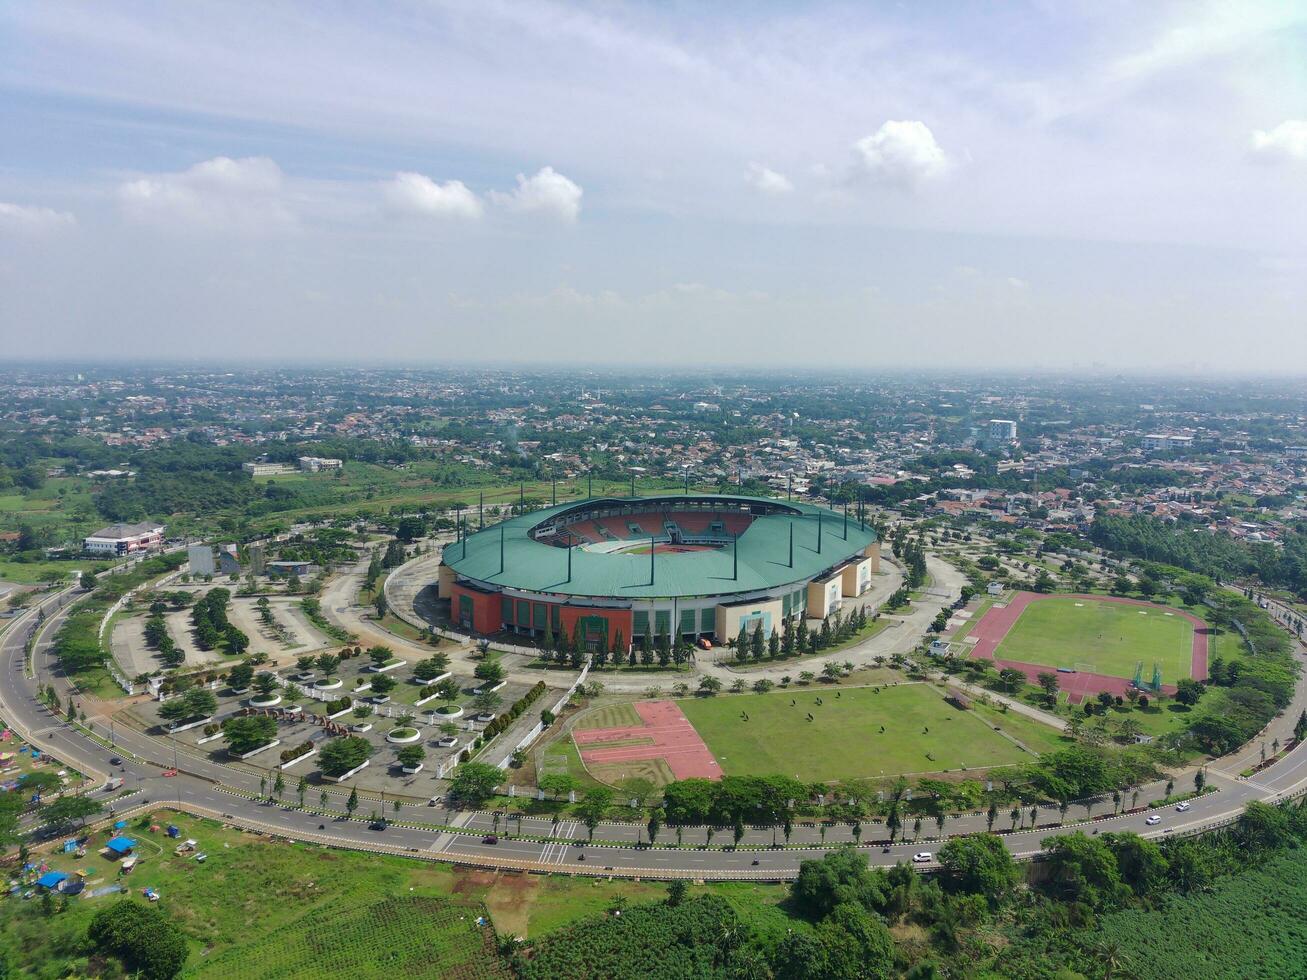 bogor, Indonesia - 2022. aéreo ver de estadio en un soleado día foto